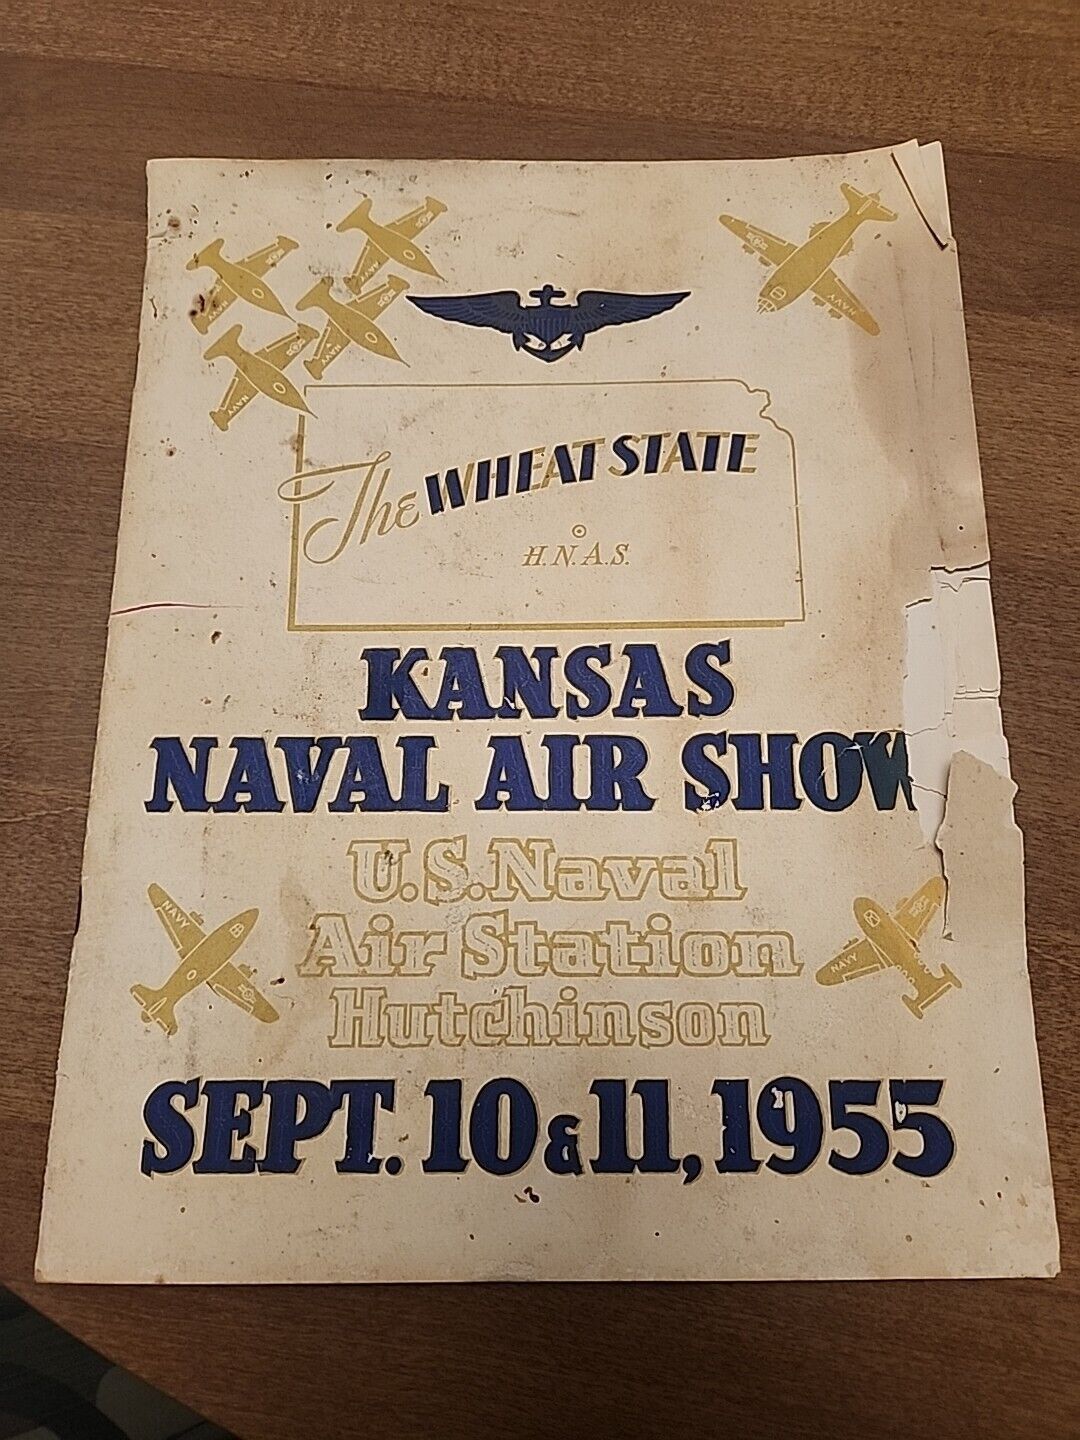 1955 Kansas Naval Air Show US Air Station Hutchinson  The Weat State Souvenir...